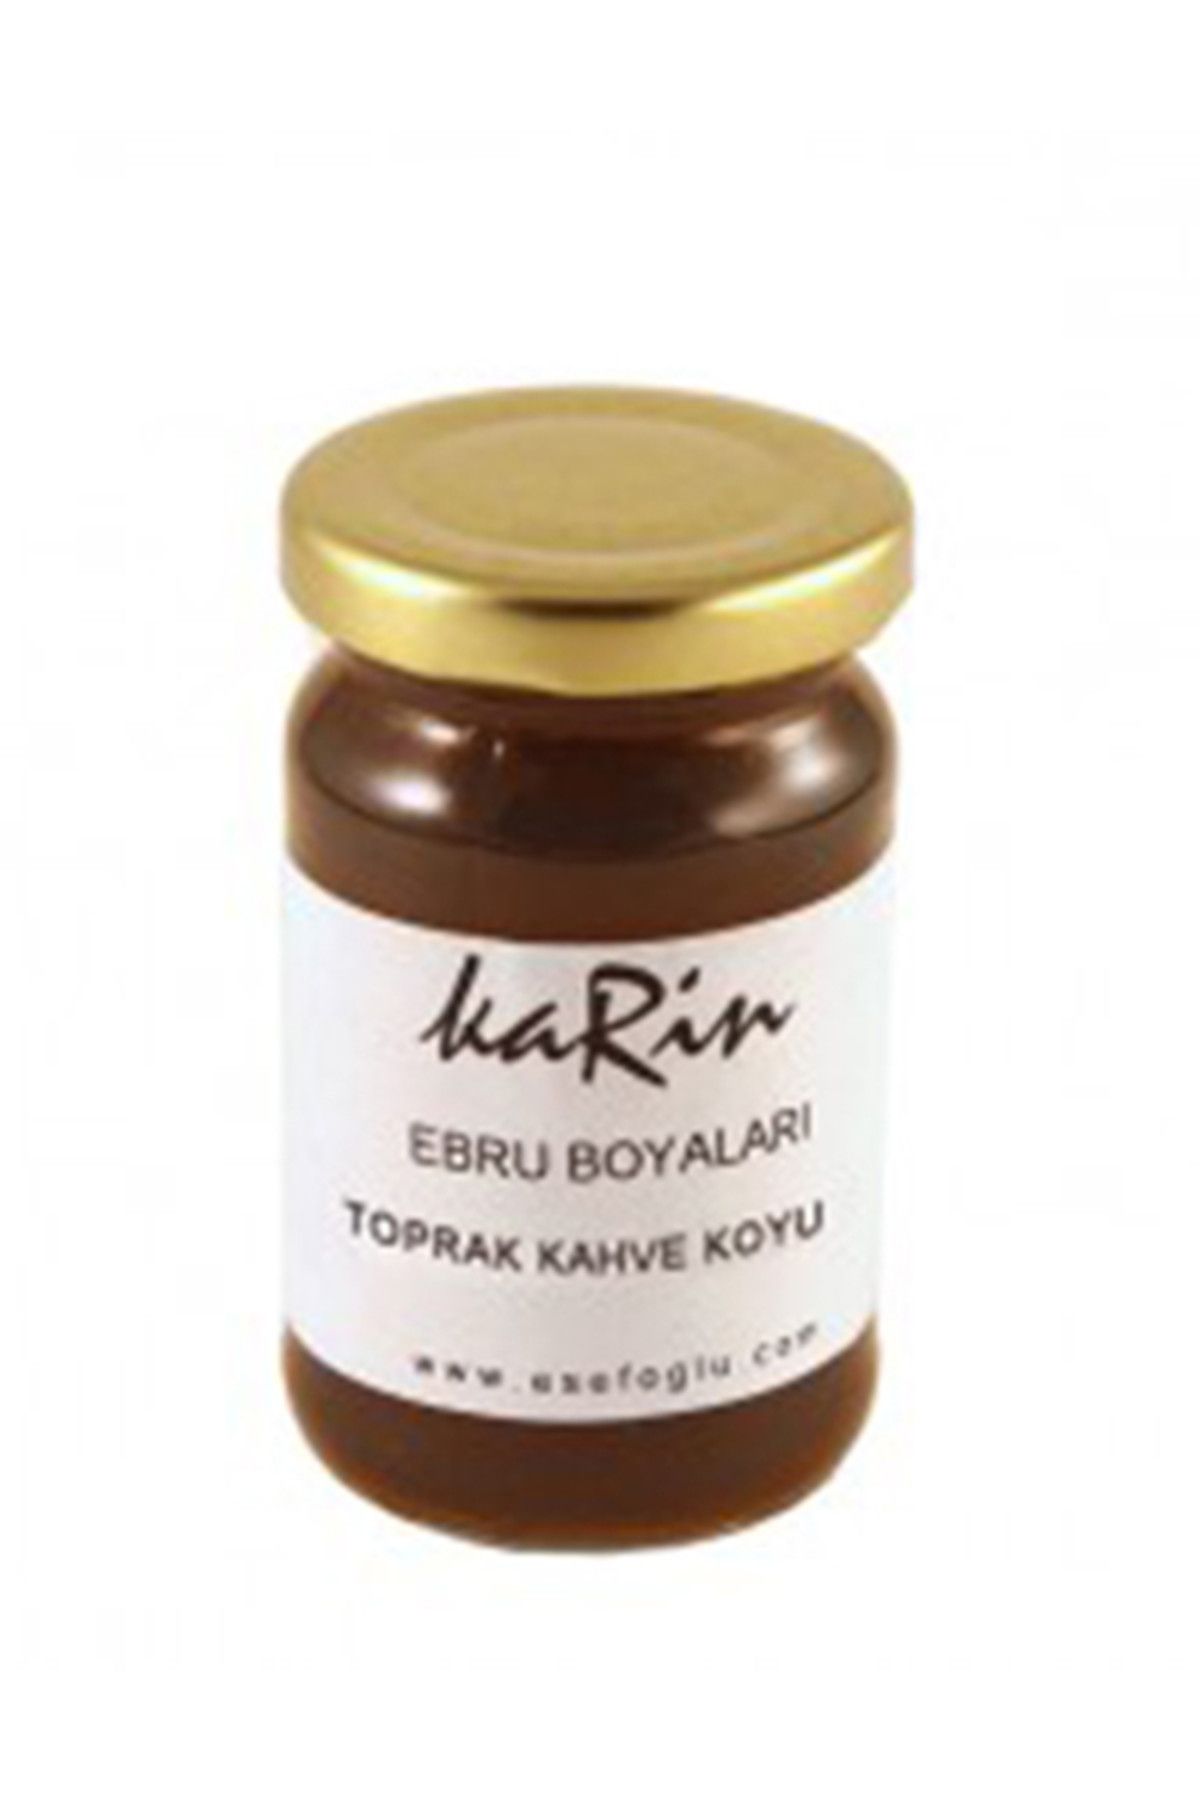 Karin Ebru Boyası 105ml - Oksit Kahve Koyu 604 194311